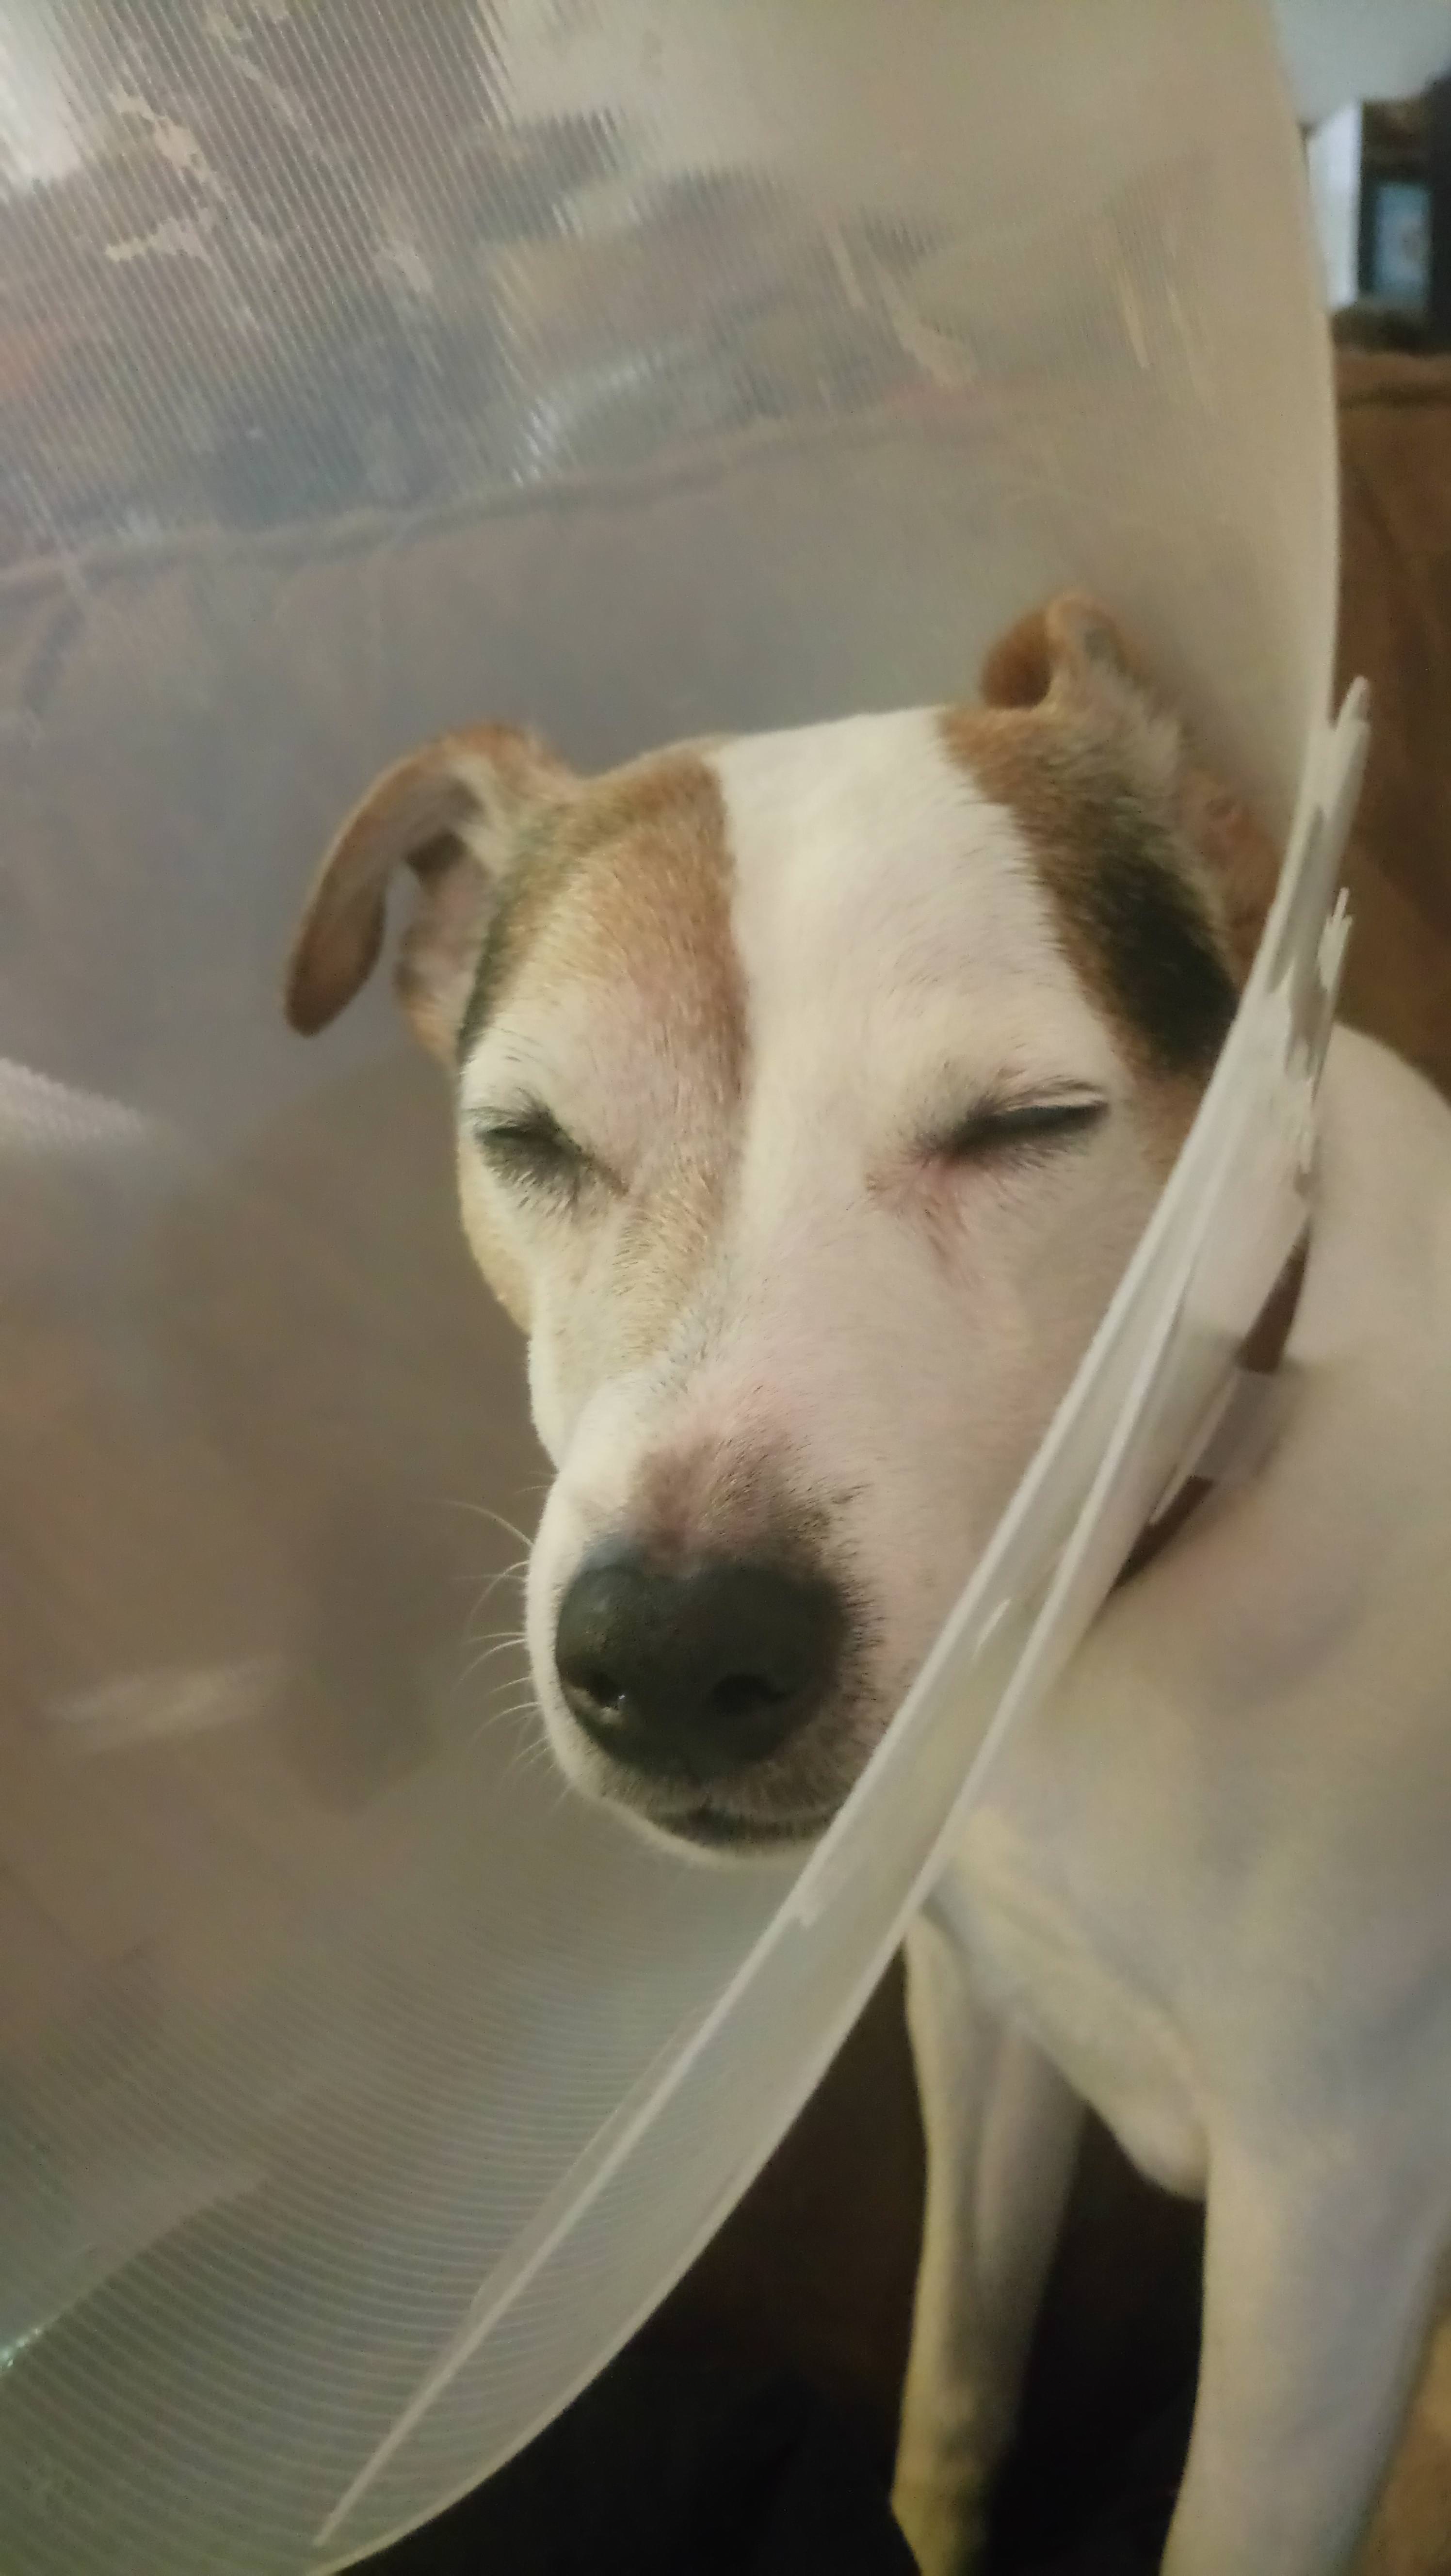 My poor dogo! He's sooooo sad/stoned - Album on Imgur